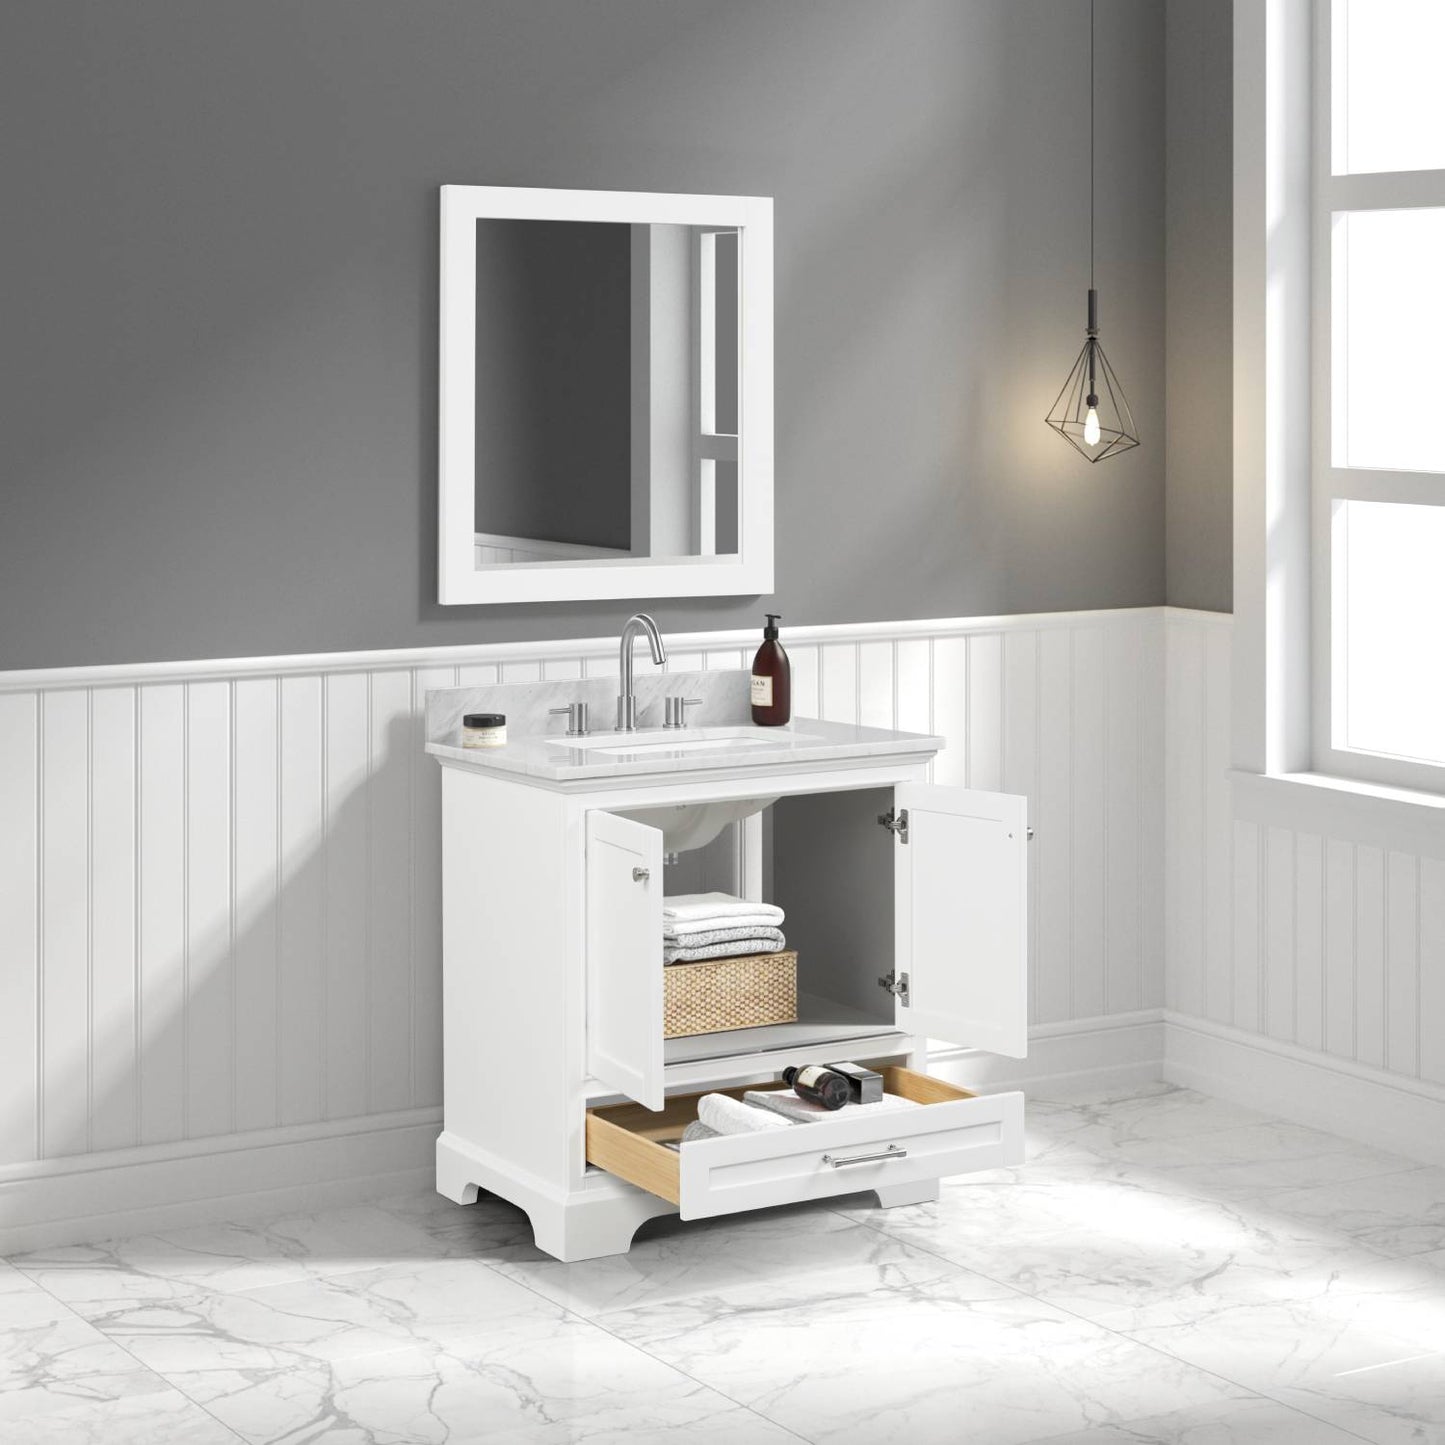 Copenhagen 30" Freestanding Bathroom Vanity With Countertop, Undermount Sink & Mirror - Matte White